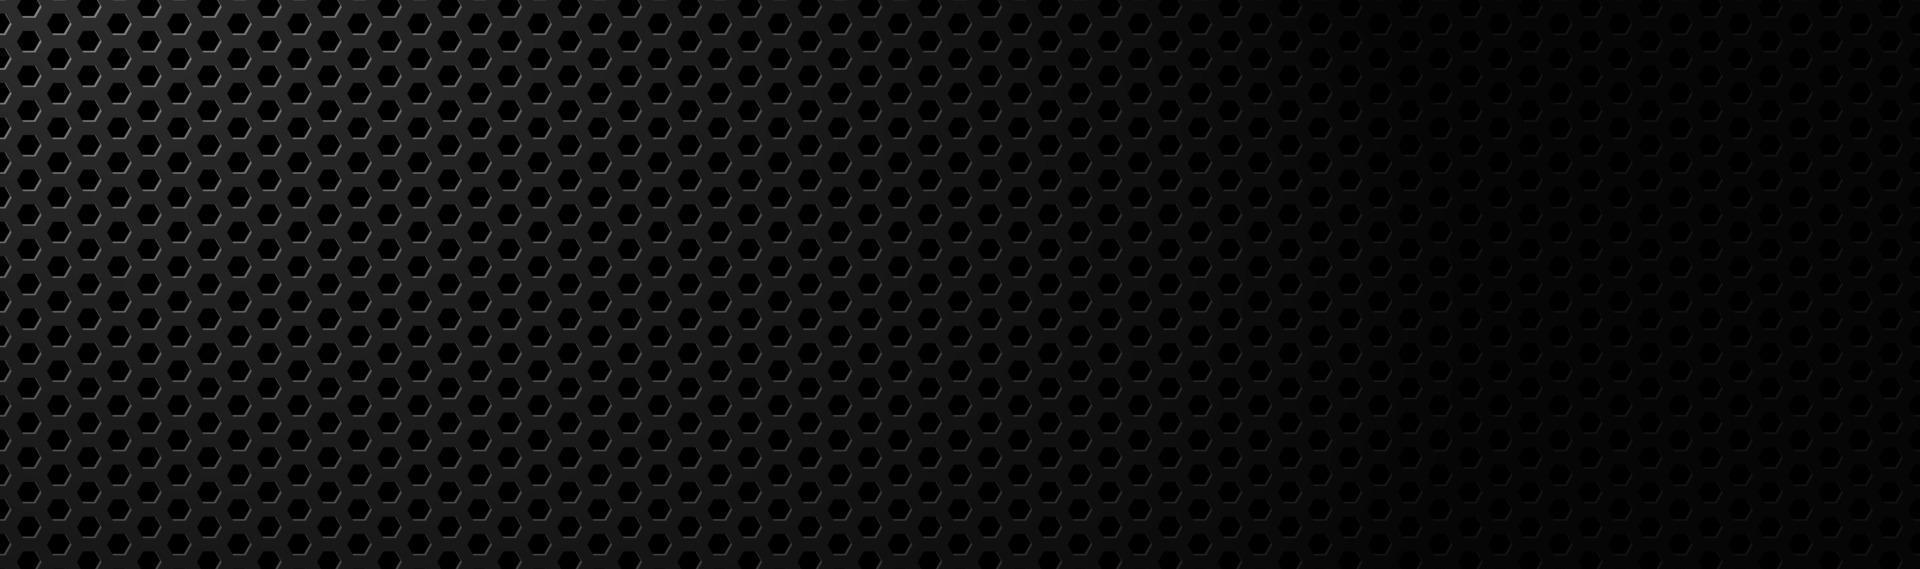 astratto nero scuro geometrico maglia esagonale materiale intestazione tecnologia metallica banner con spazio vuoto per il tuo logo vettore astratto sfondo widescreen